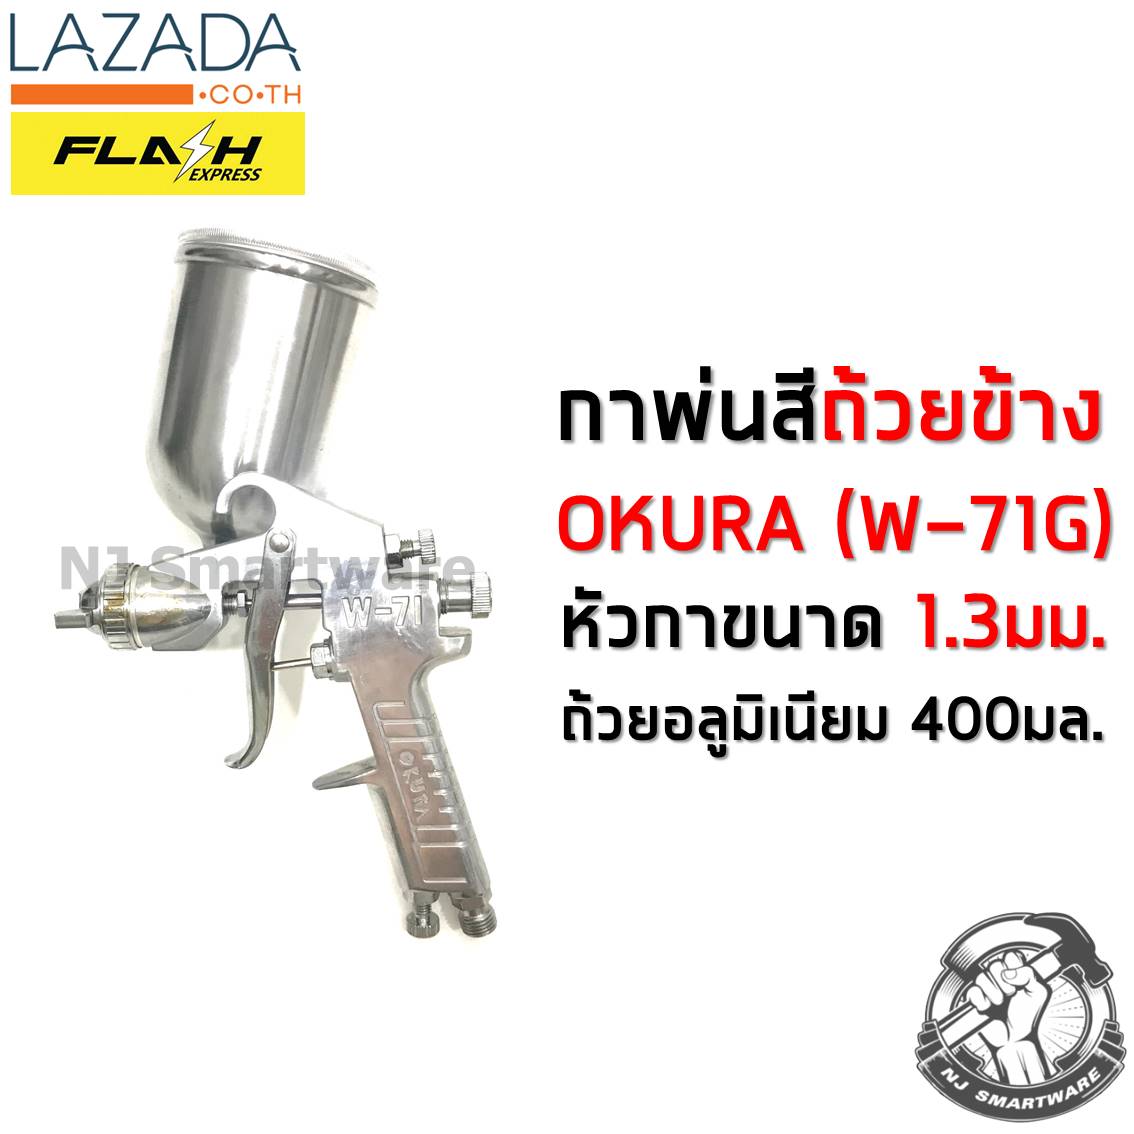 กาพ่นสี OKURA (รุ่น W-71G) หัวกา 1.3 มม. ถ้วยอลูมิเนียม 400 มล. ถ้วยข้าง ราคาถูก - OKURA Spray Gun (#W-71G) 400 ml. Alu. Cup with 1.3 mm. Nozzle